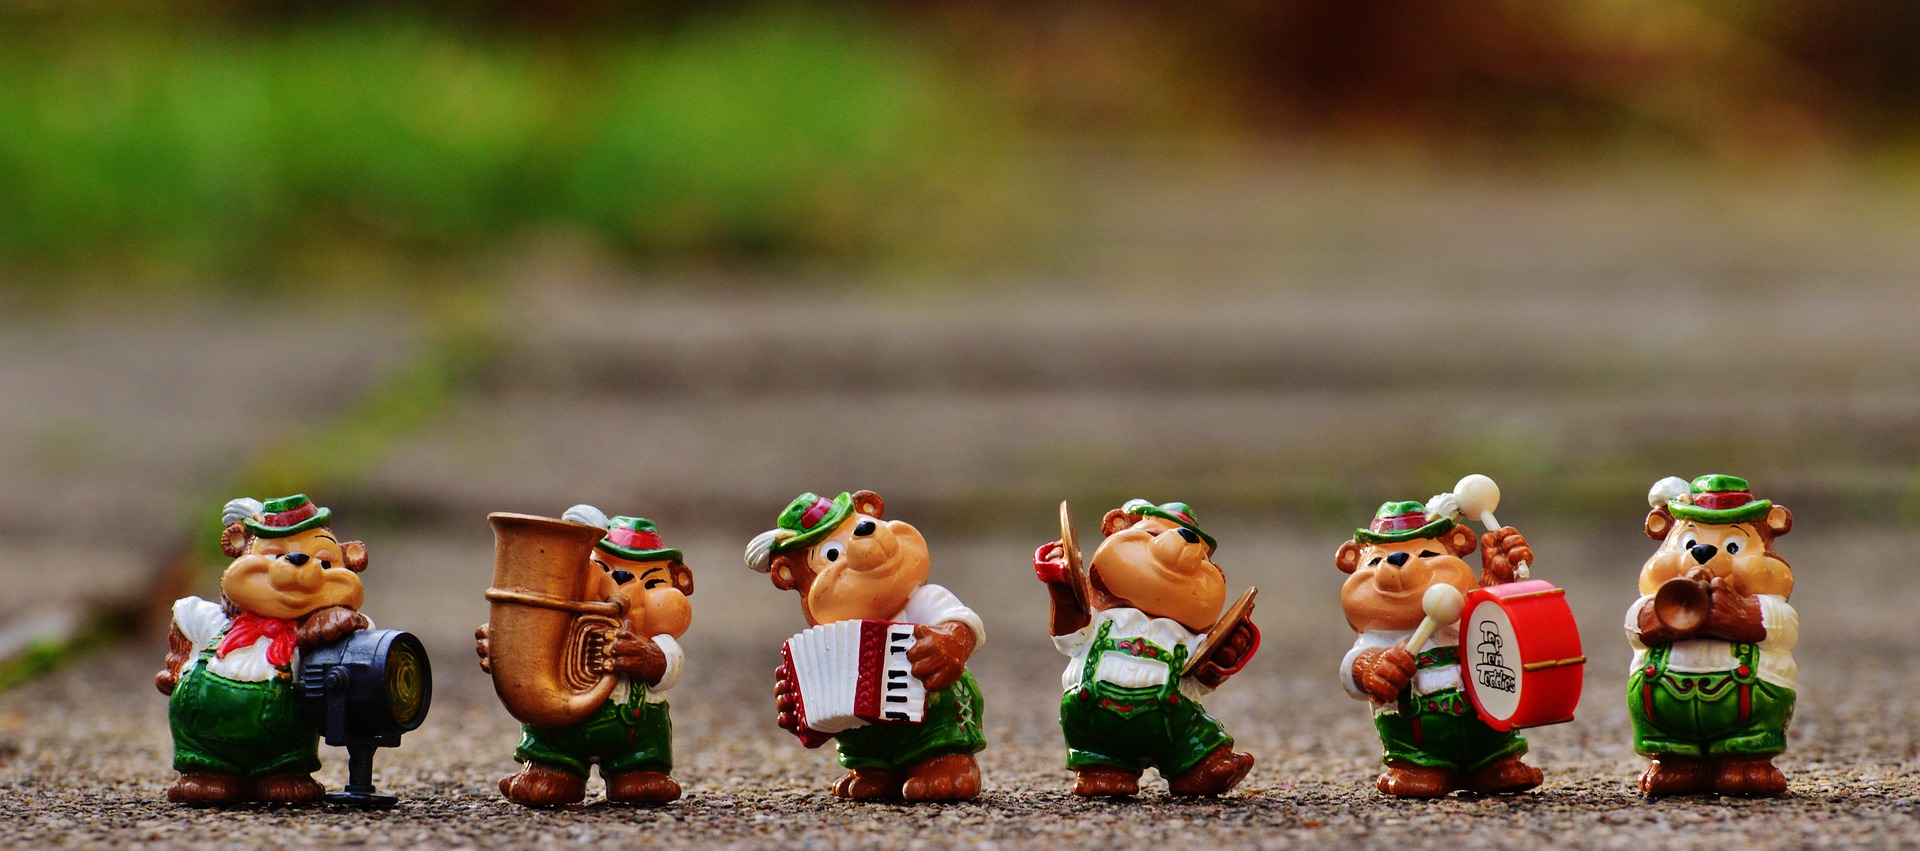 Hier sehen sie fünf Bärenfiguren mit Musikinstrumenten